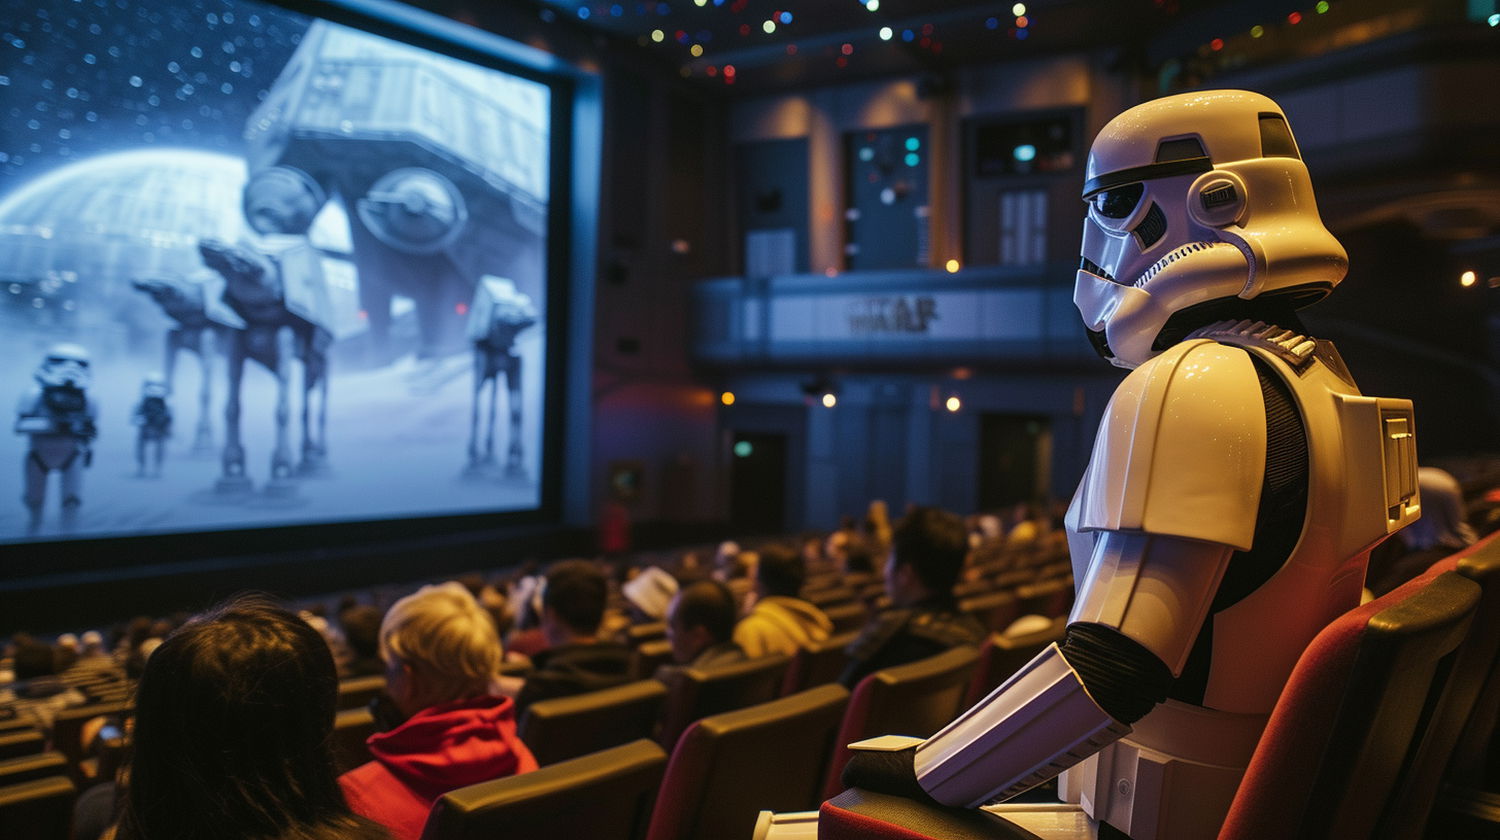 Miért olyan népszerűek a Star Wars filmek és sorozatok?